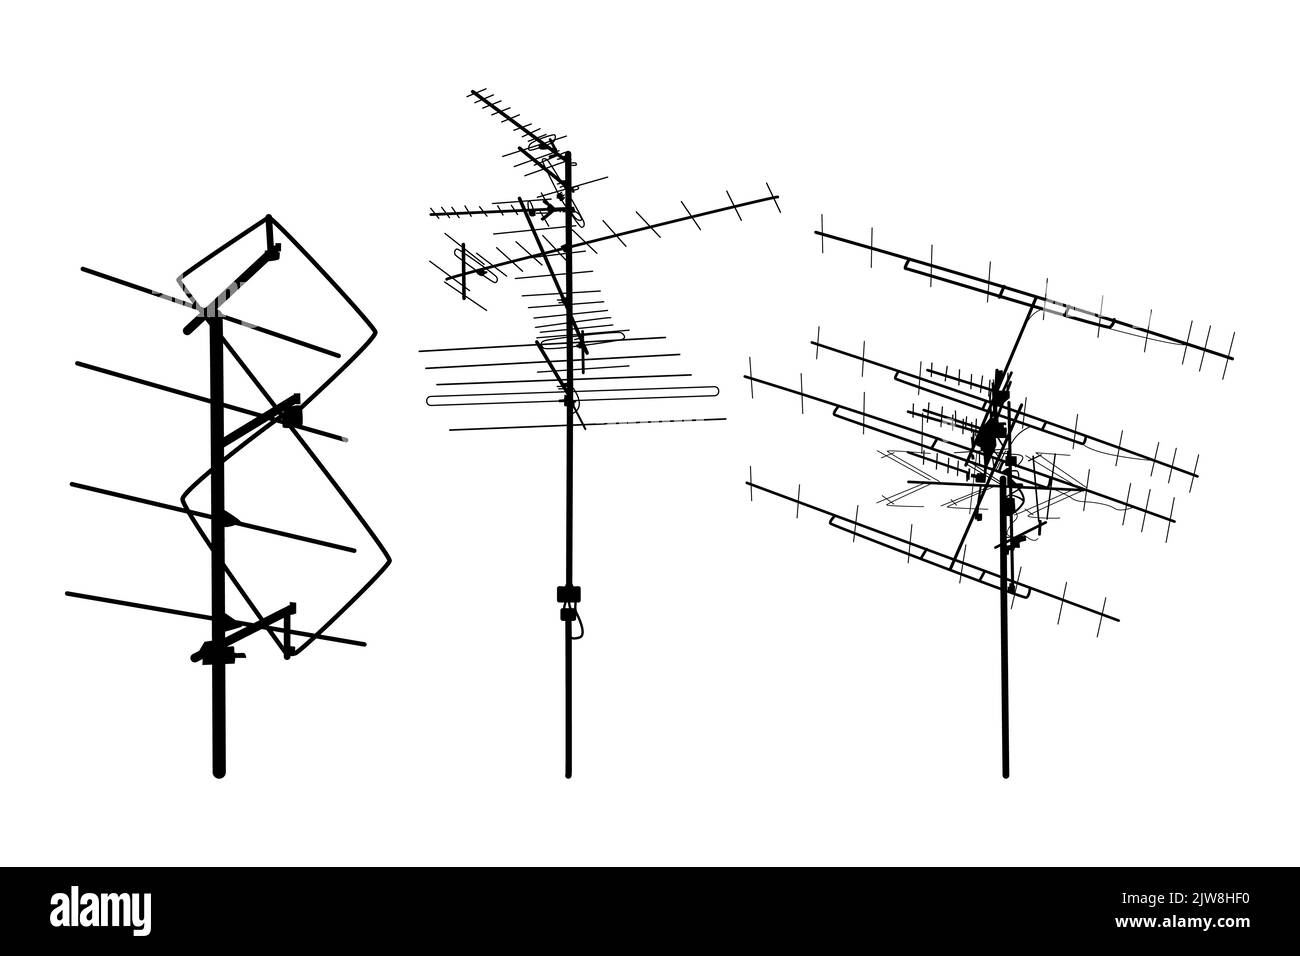 Symbole für Fernsehantennen eingestellt. Silhouetten verschiedener Fernsehantennen. TV-Antennenschild oder -Symbol. Fernsehantennen auf dem Dach. Technologiekonzept. Stock Vektor